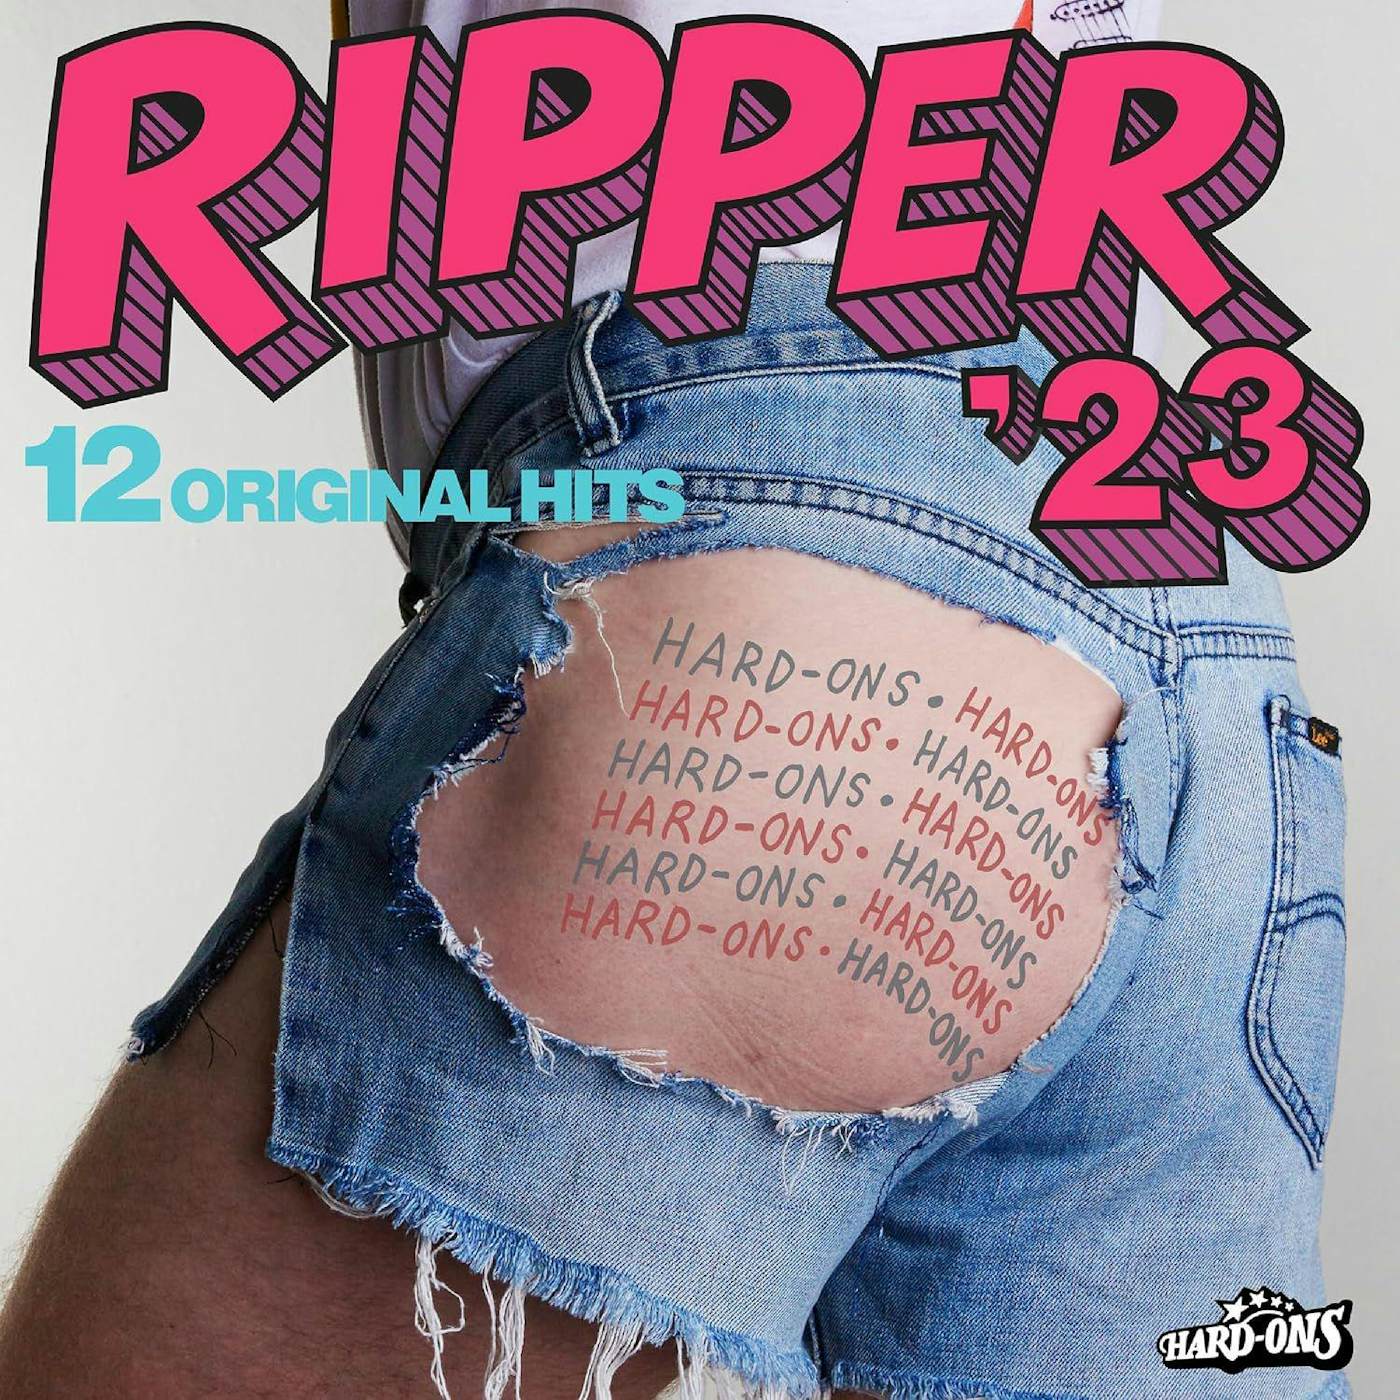 Hard-Ons Ripper '23 Vinyl Record